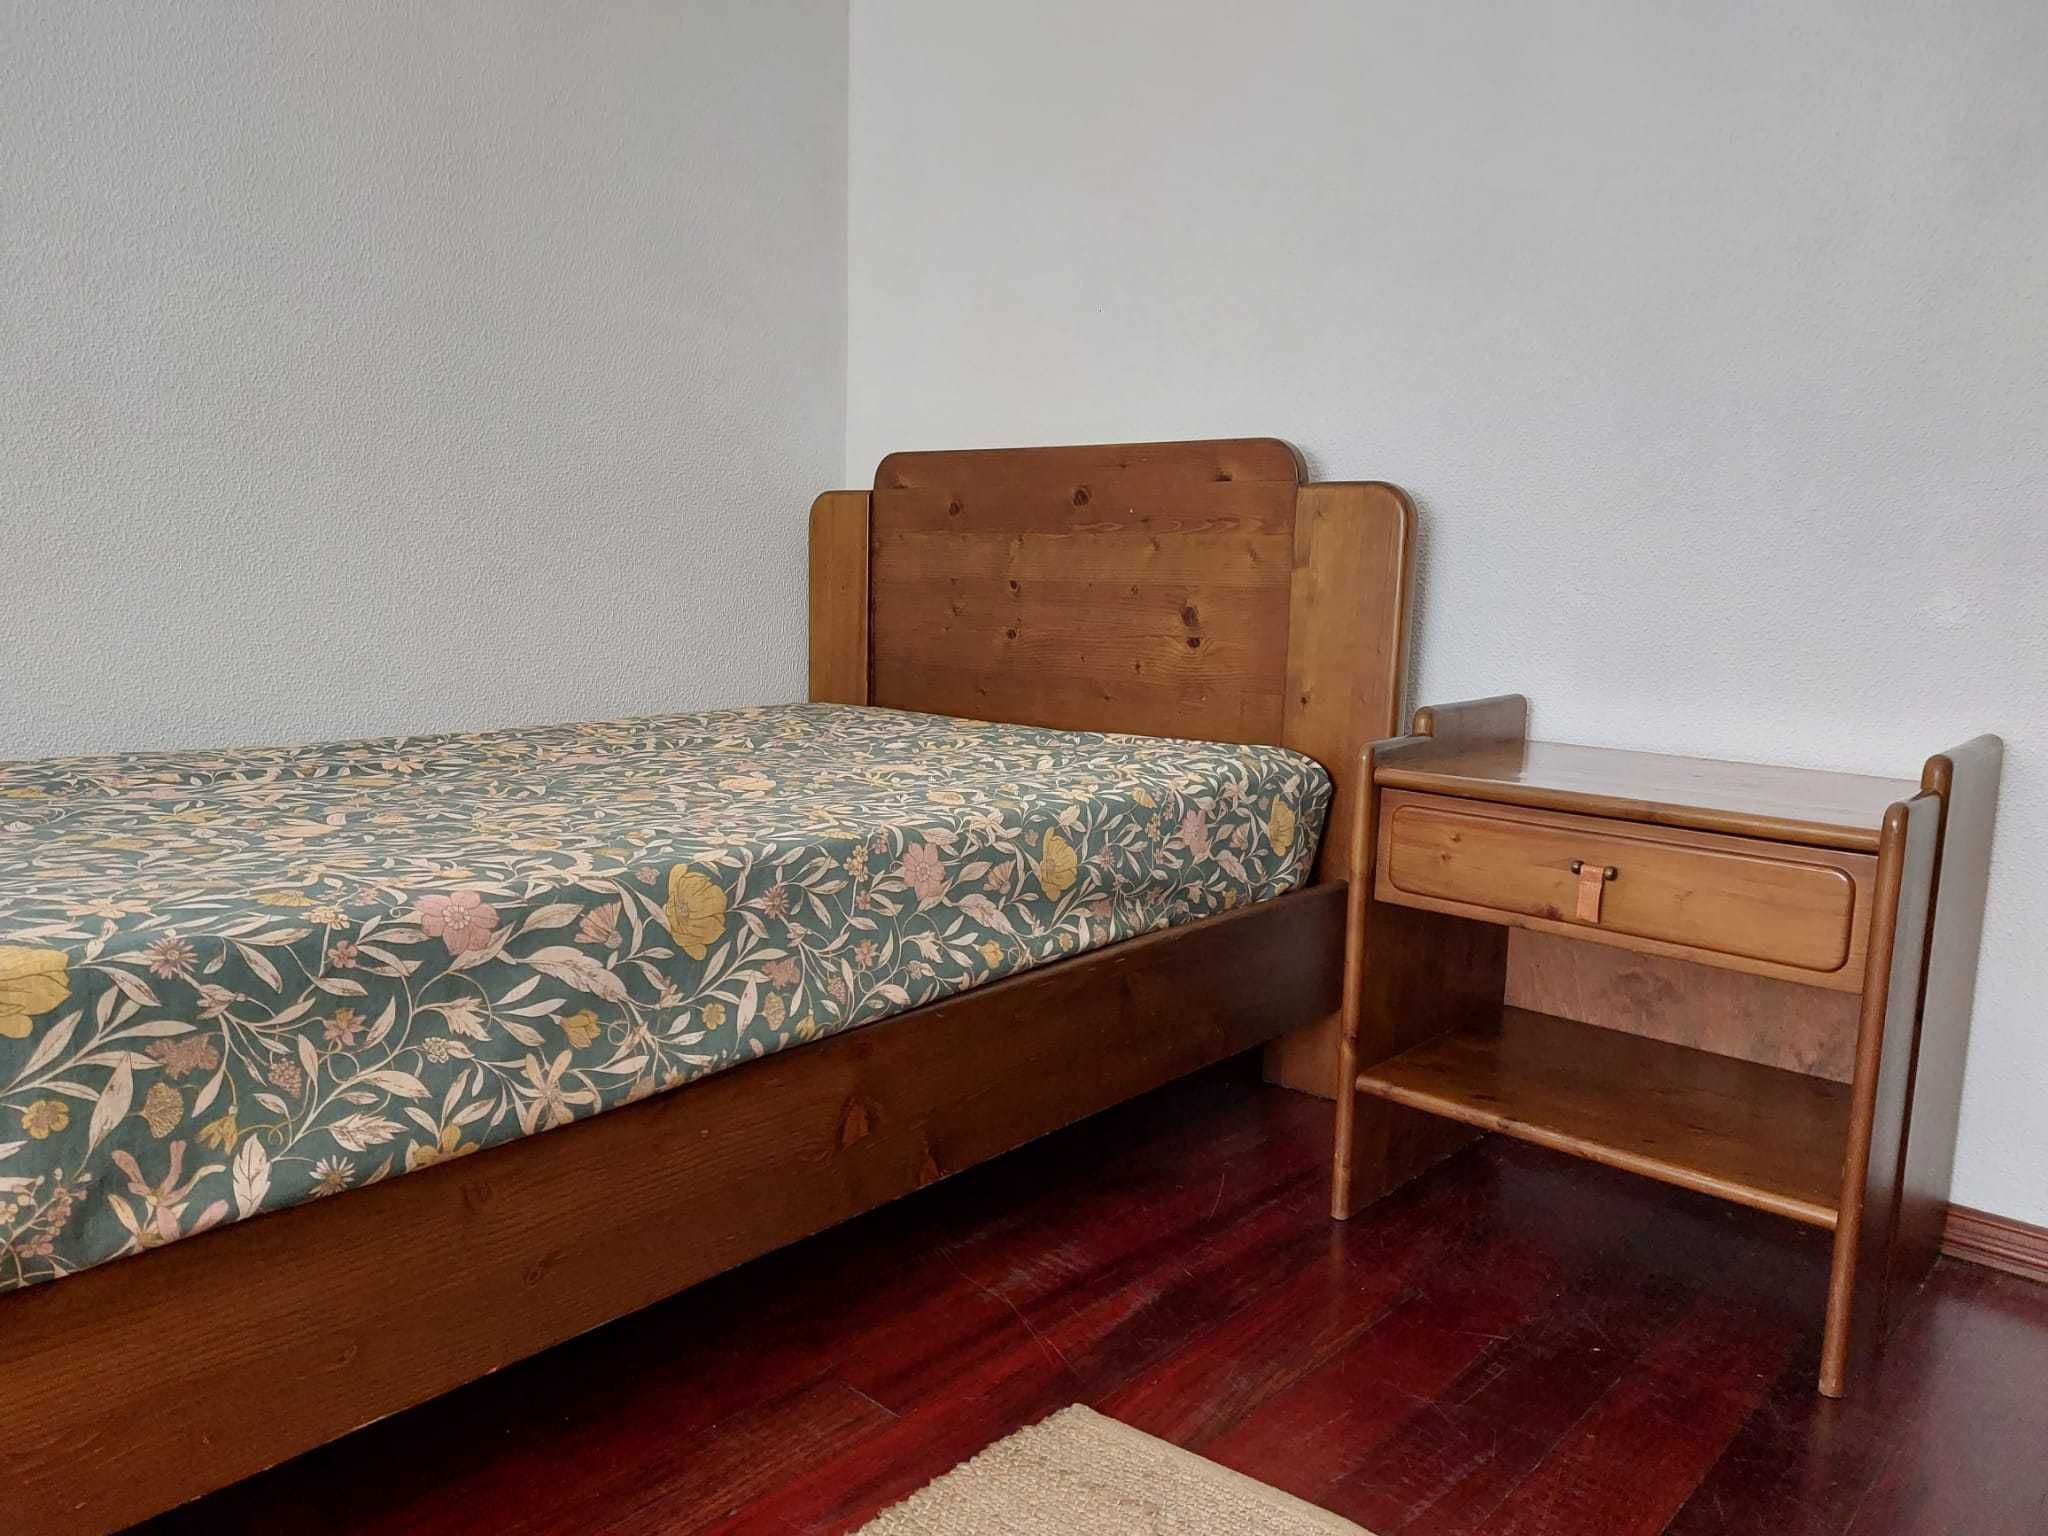 Conjunto de quarto - Cama, mesa de cabeceira, secretária e cadeira